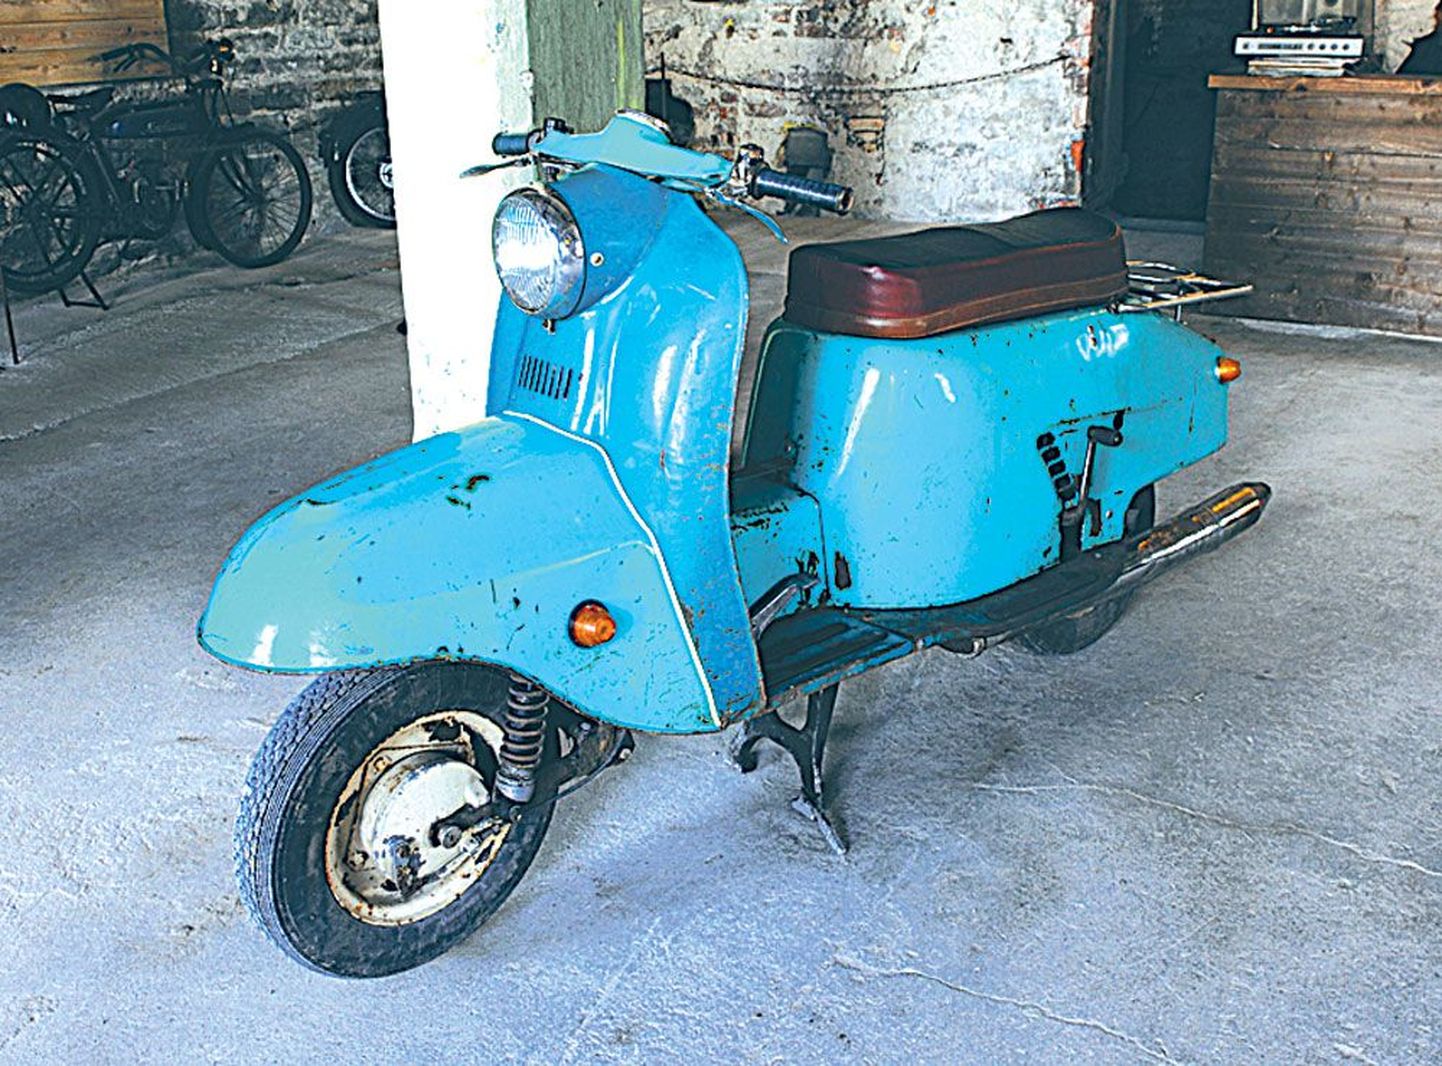 Произведенный в Советском Союзе мотороллер очень похож на всемирно известного культового итальянского собрата Vespa.